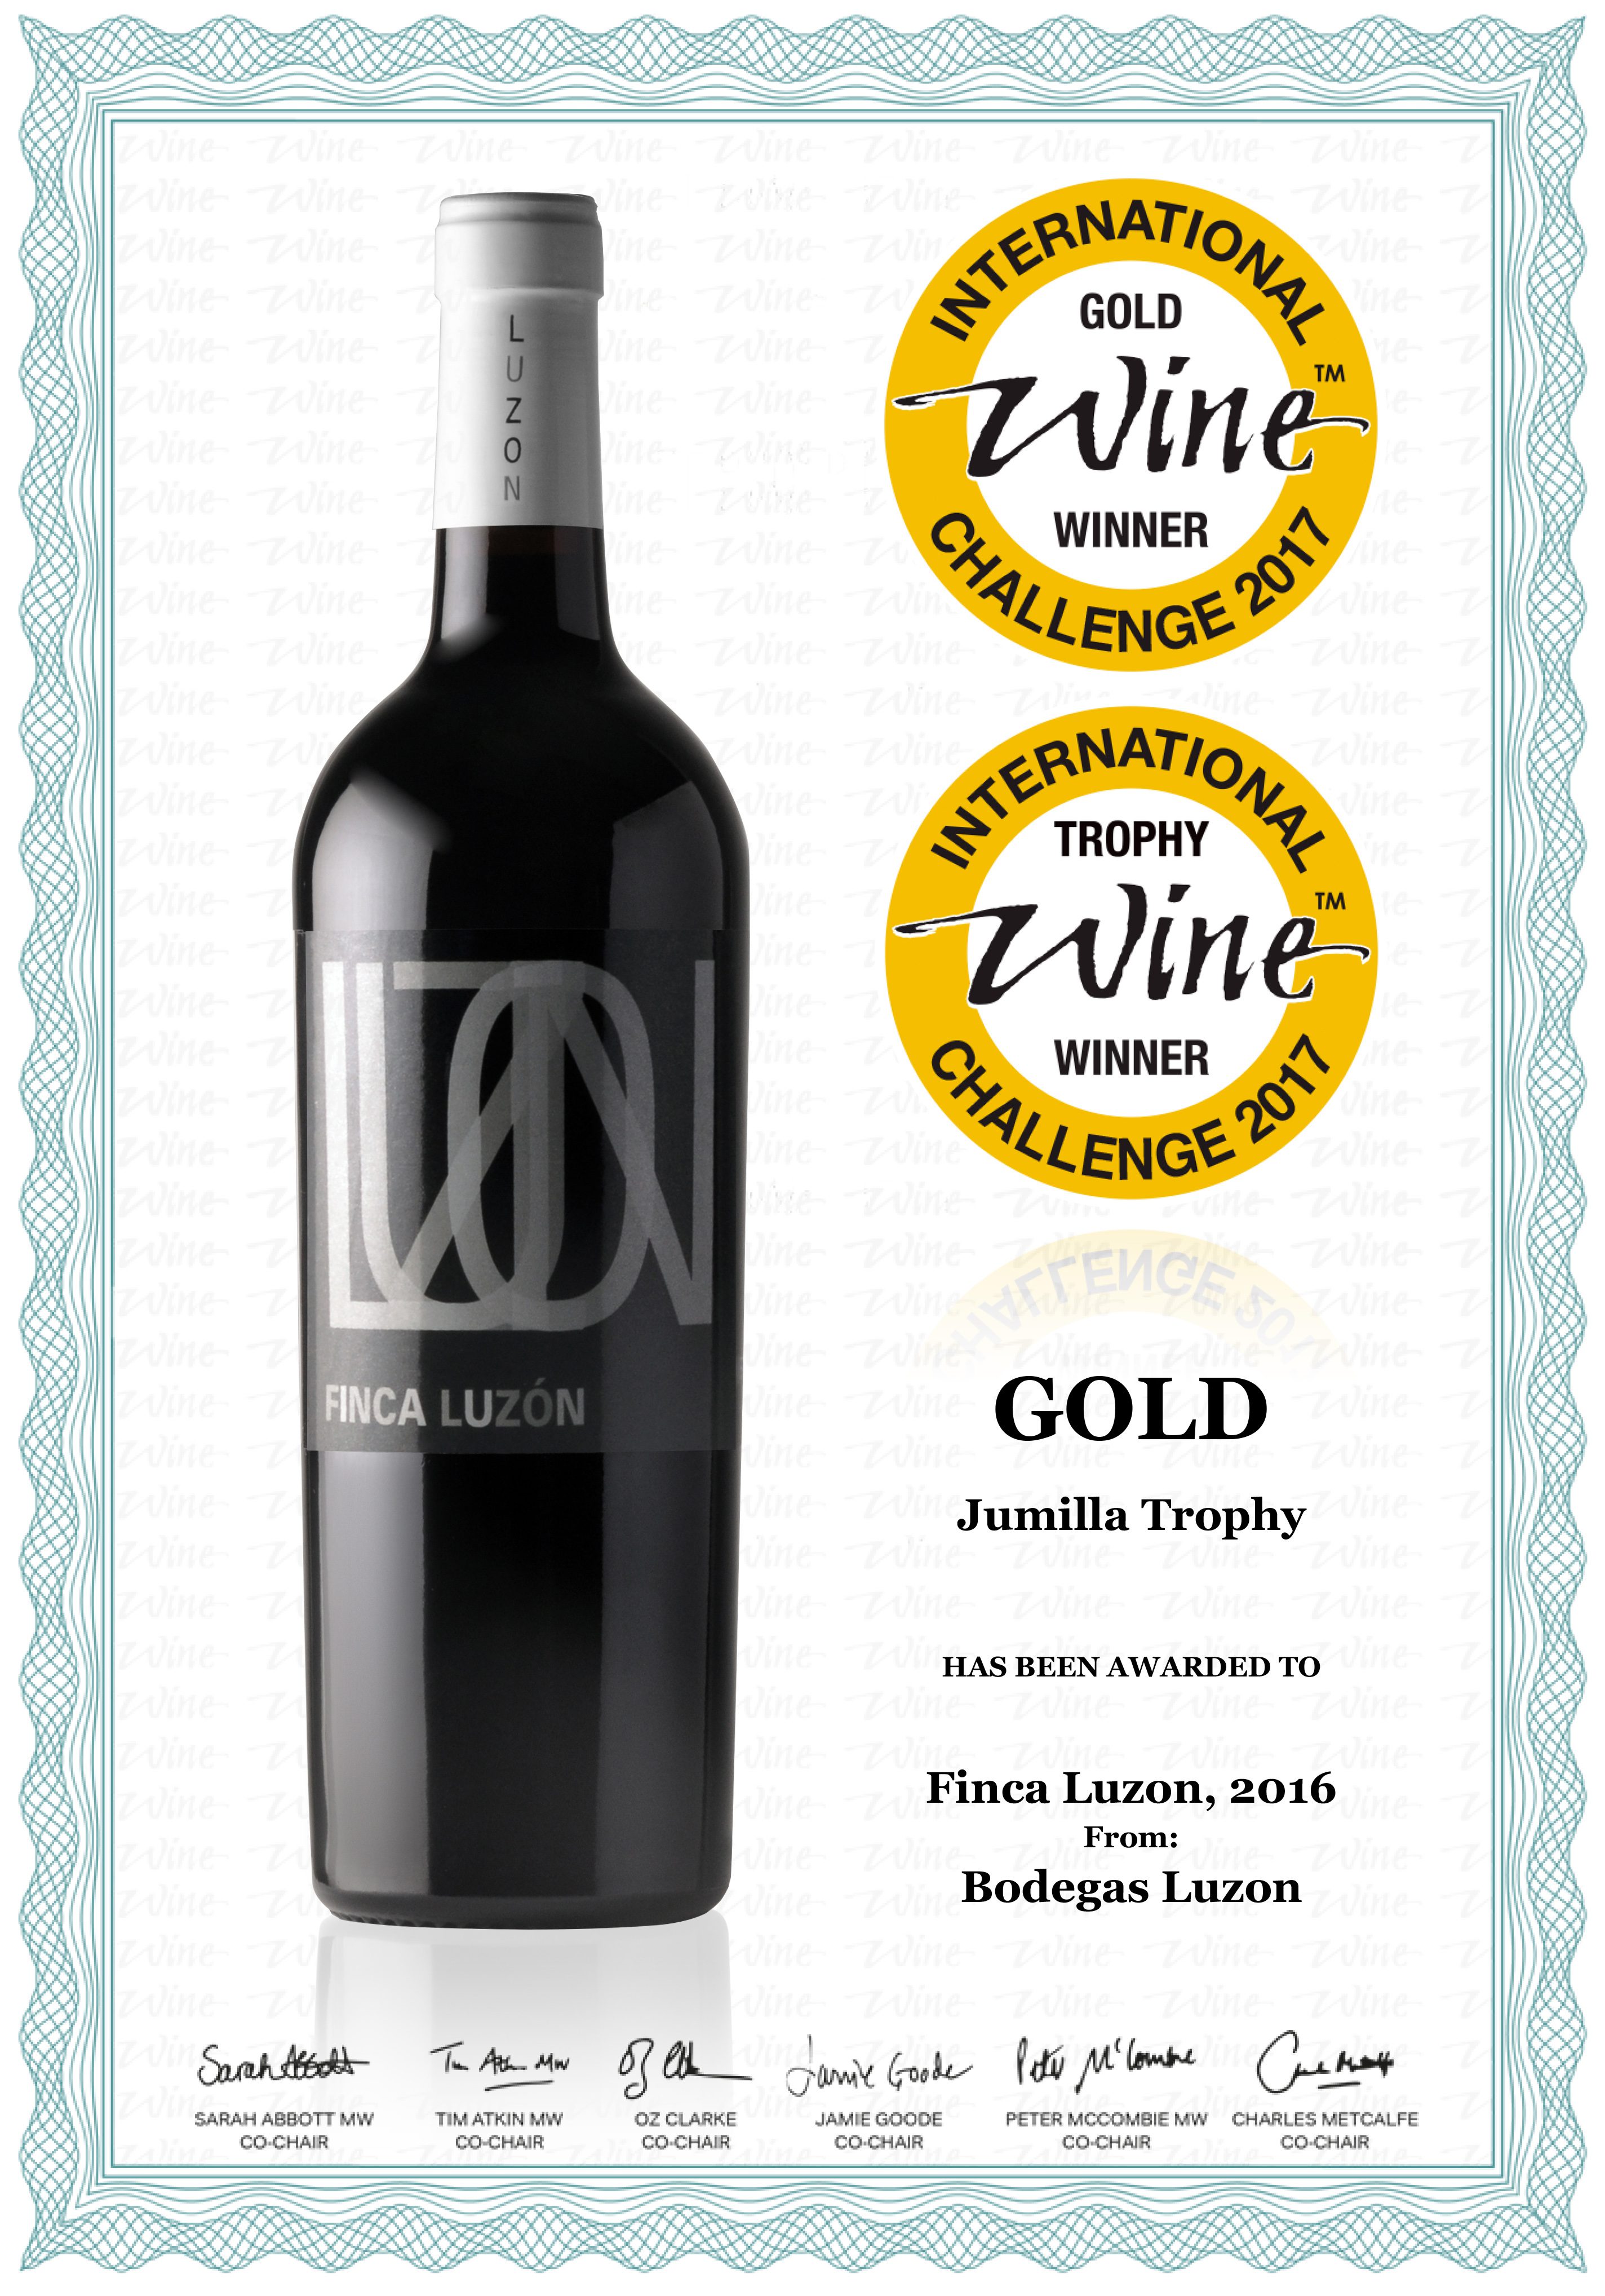 Finca Luzón 2016 medalla de Oro del certamen International Wine Challenge 2017